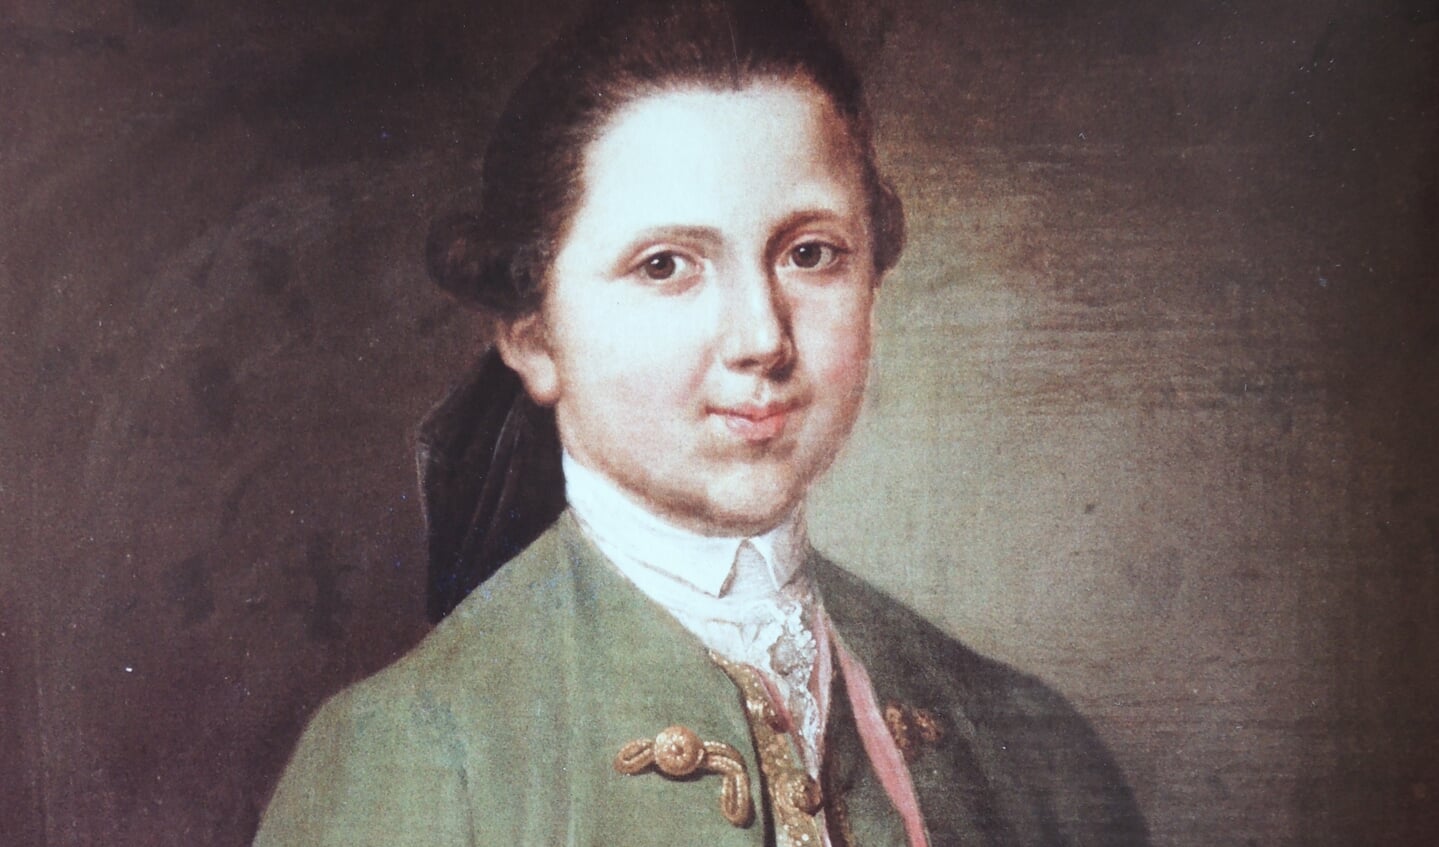 Cootje De la Sablonière op ongeveer 14 jarige leeftijd.